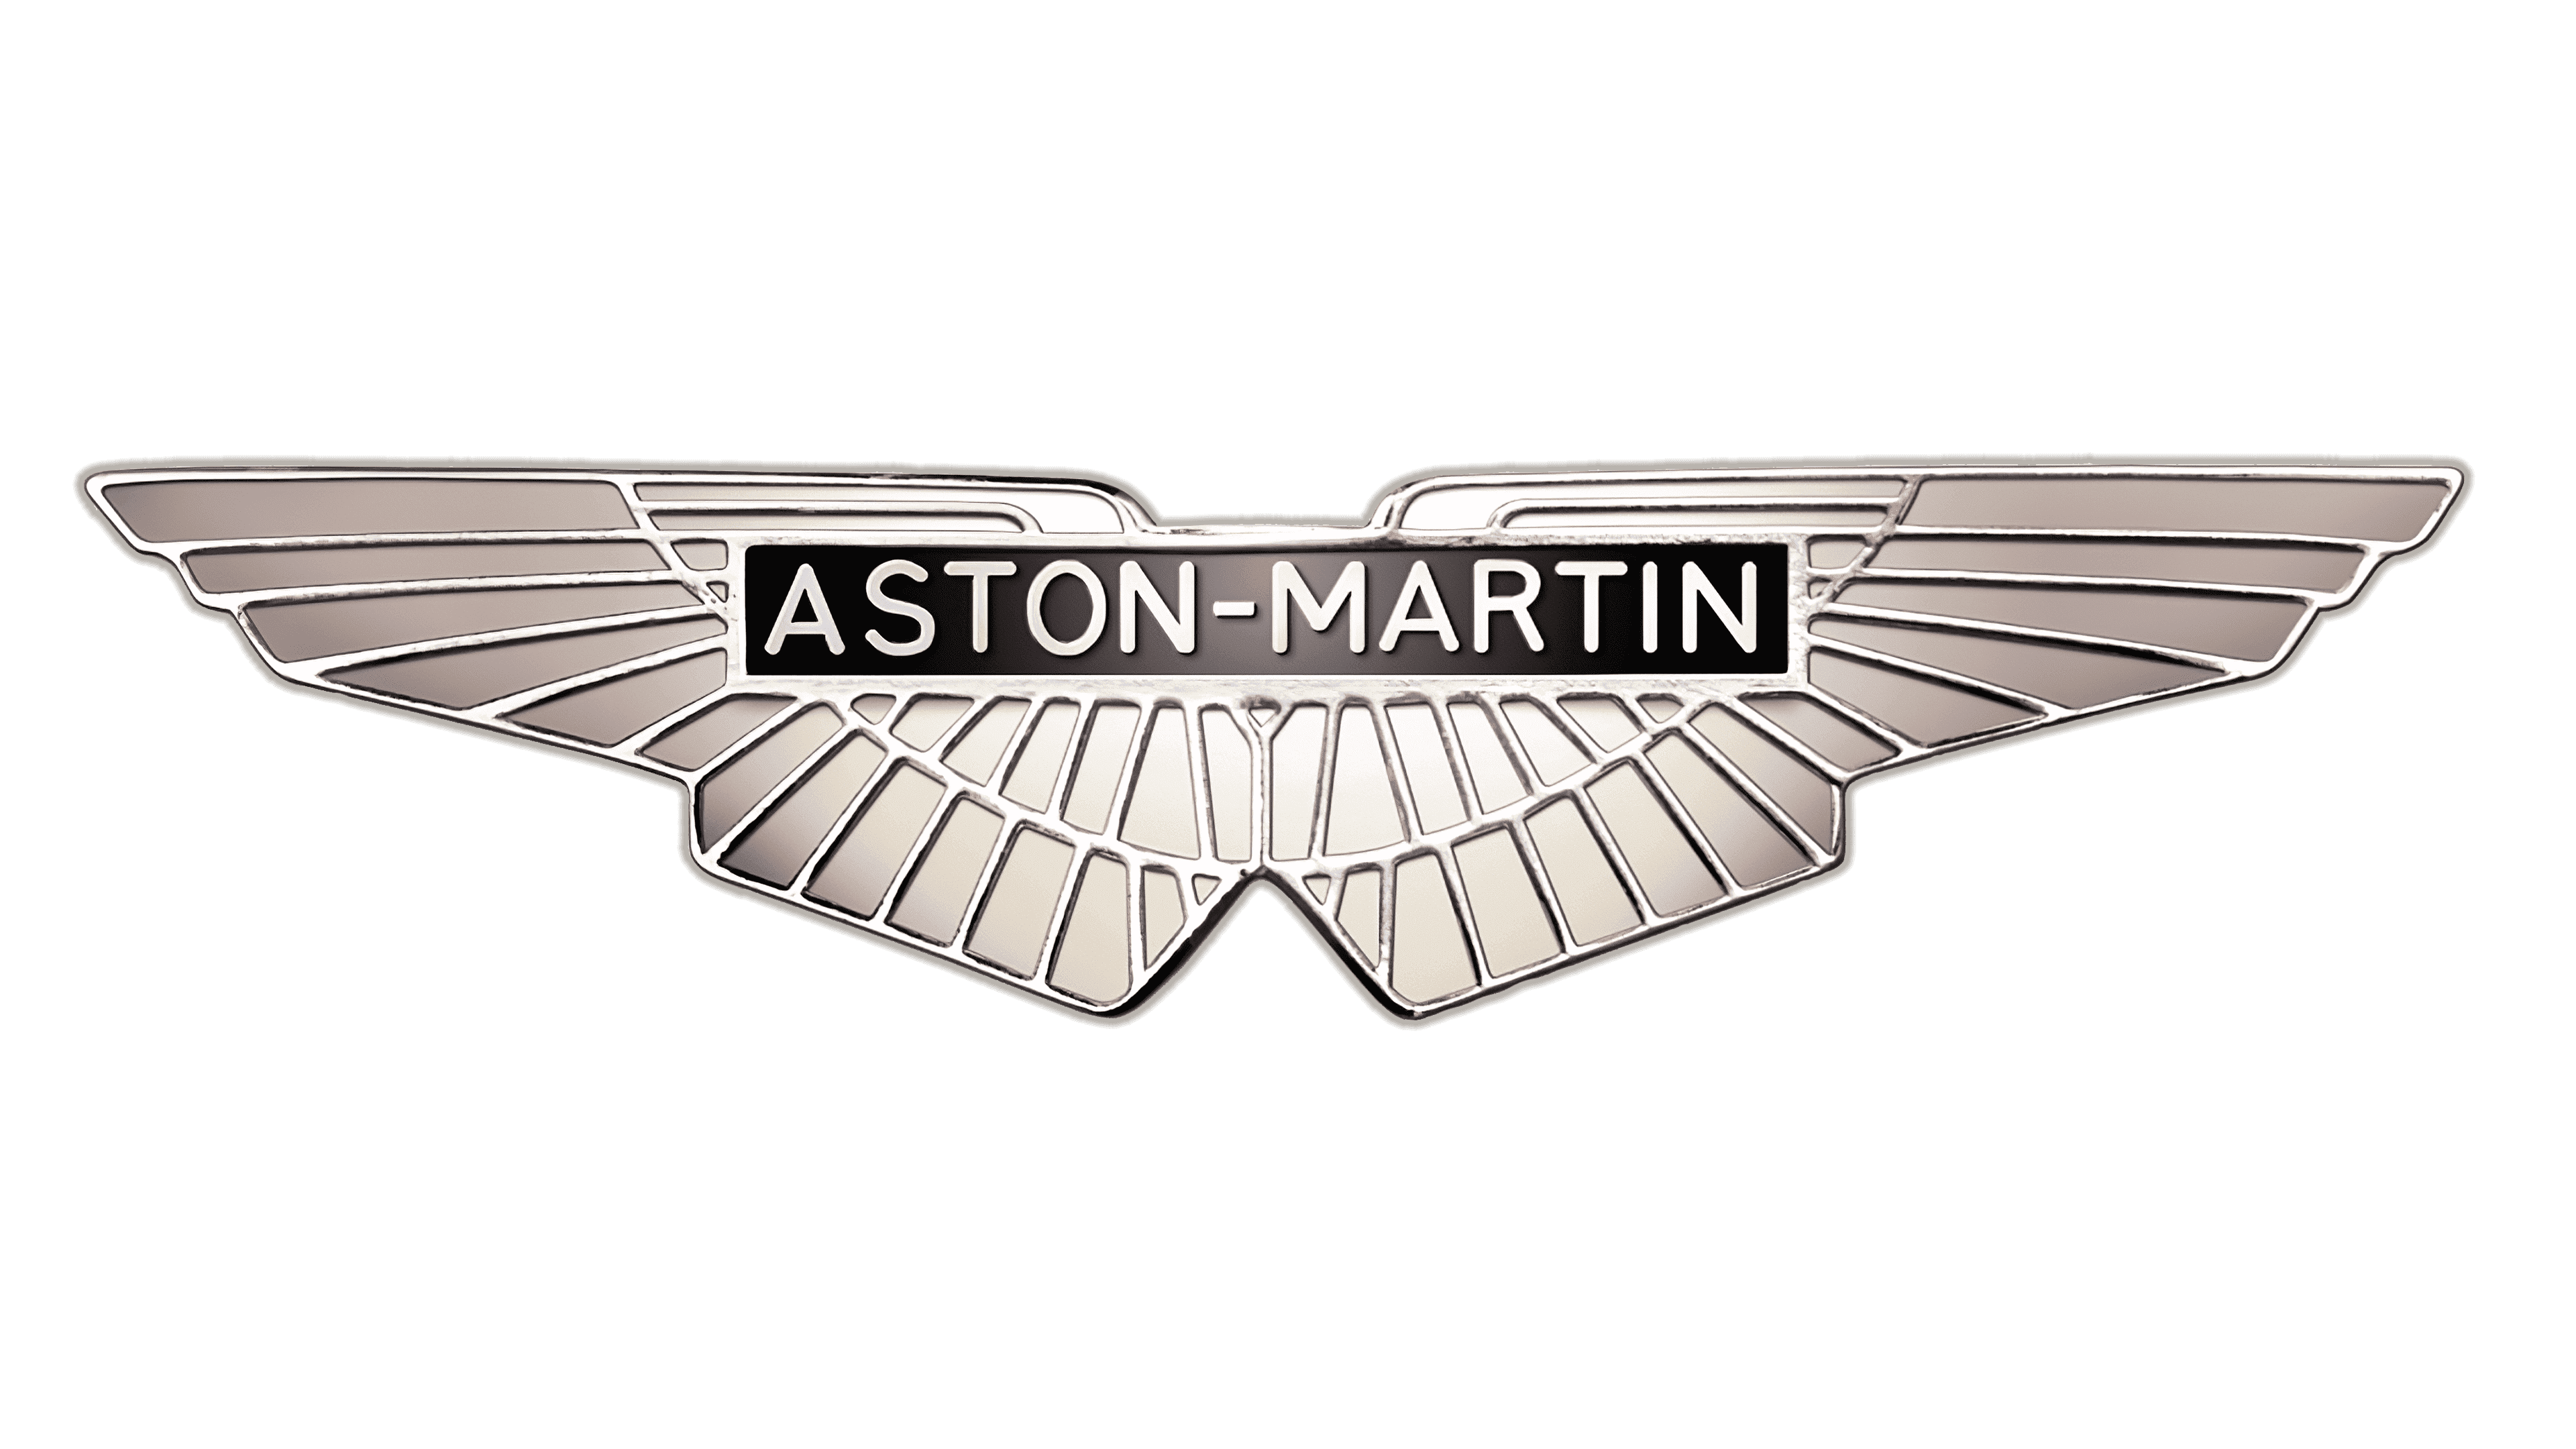 Эмблема астон мартин фото